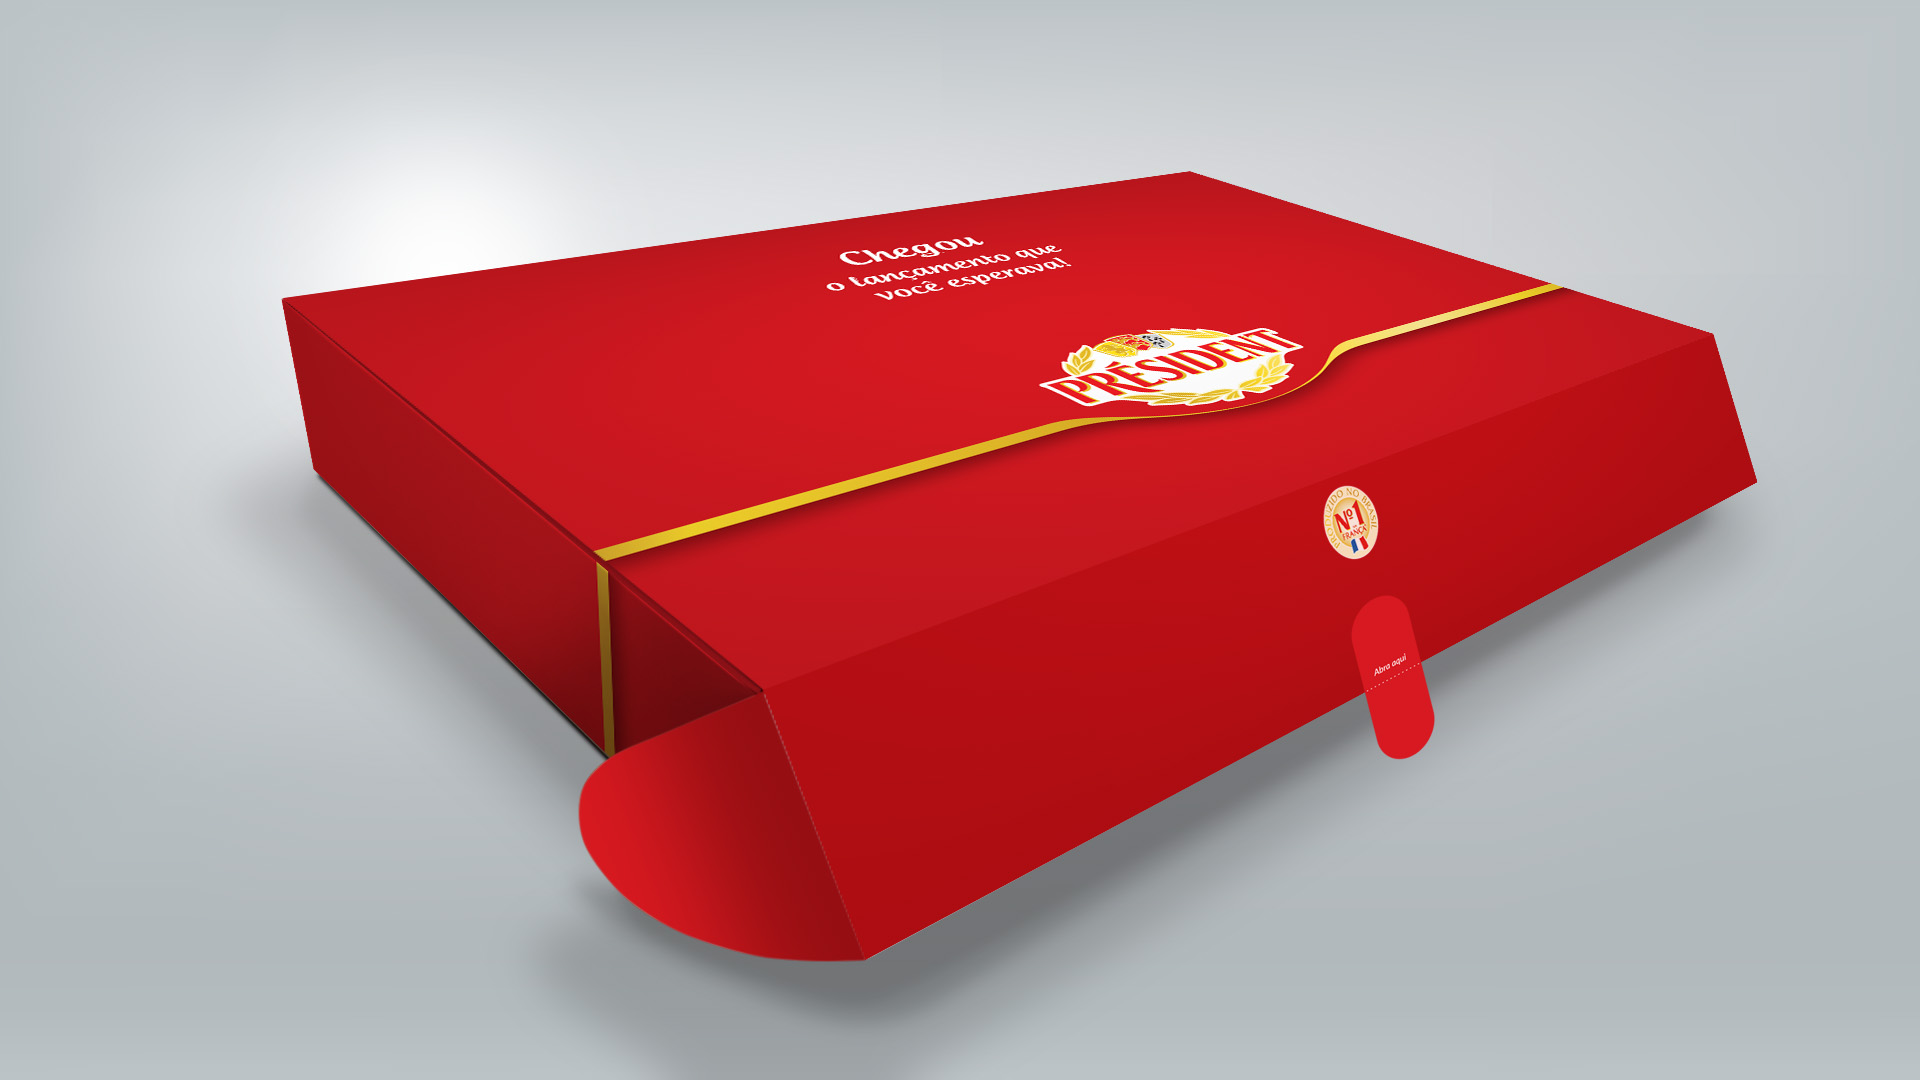 Imagem do sales kit de lançamento de produto Président Lactalis.